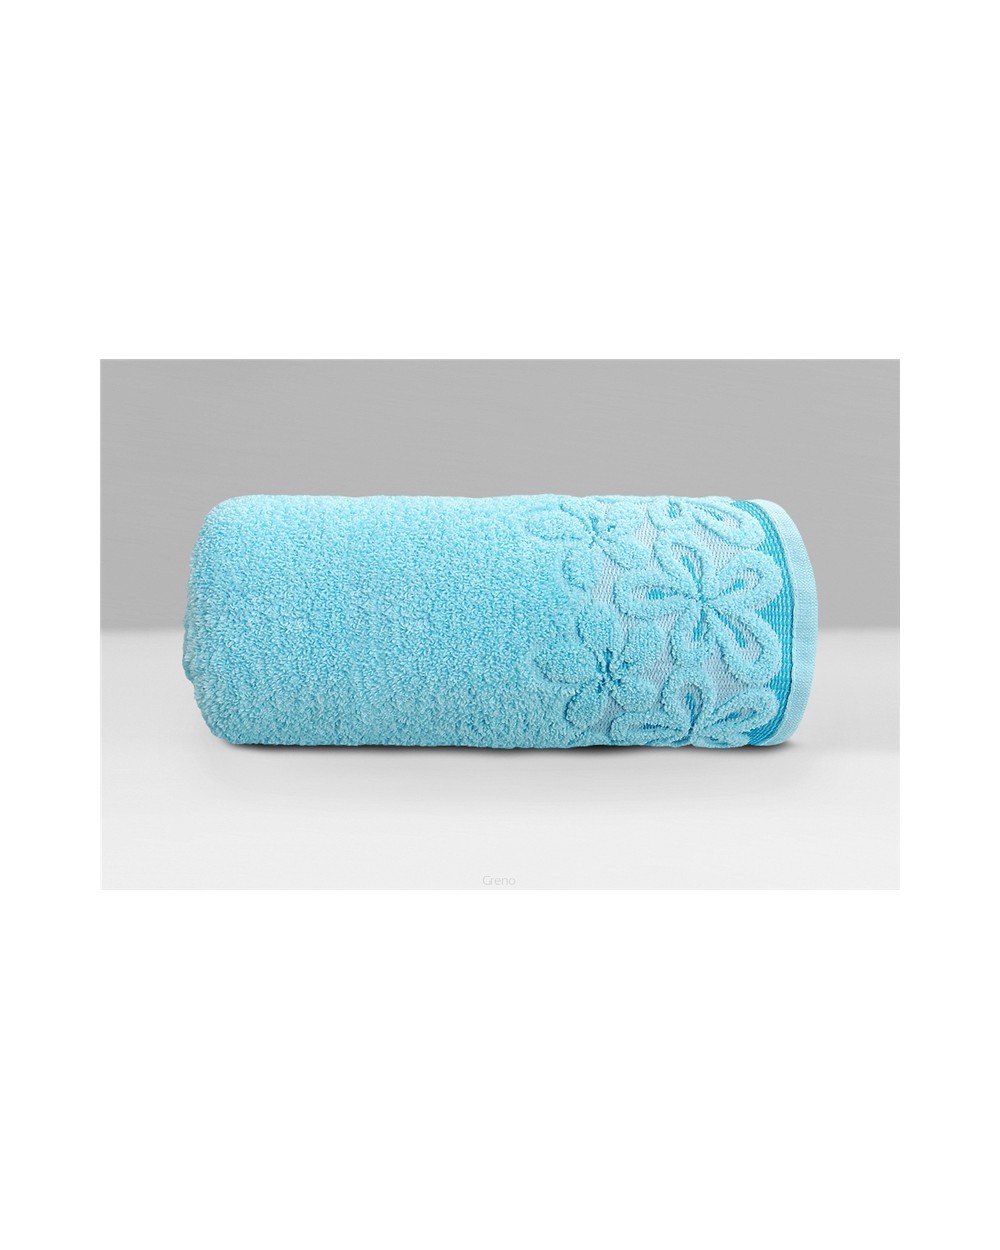 Ręcznik Bella mikrobawełna 30x50 lazurowy